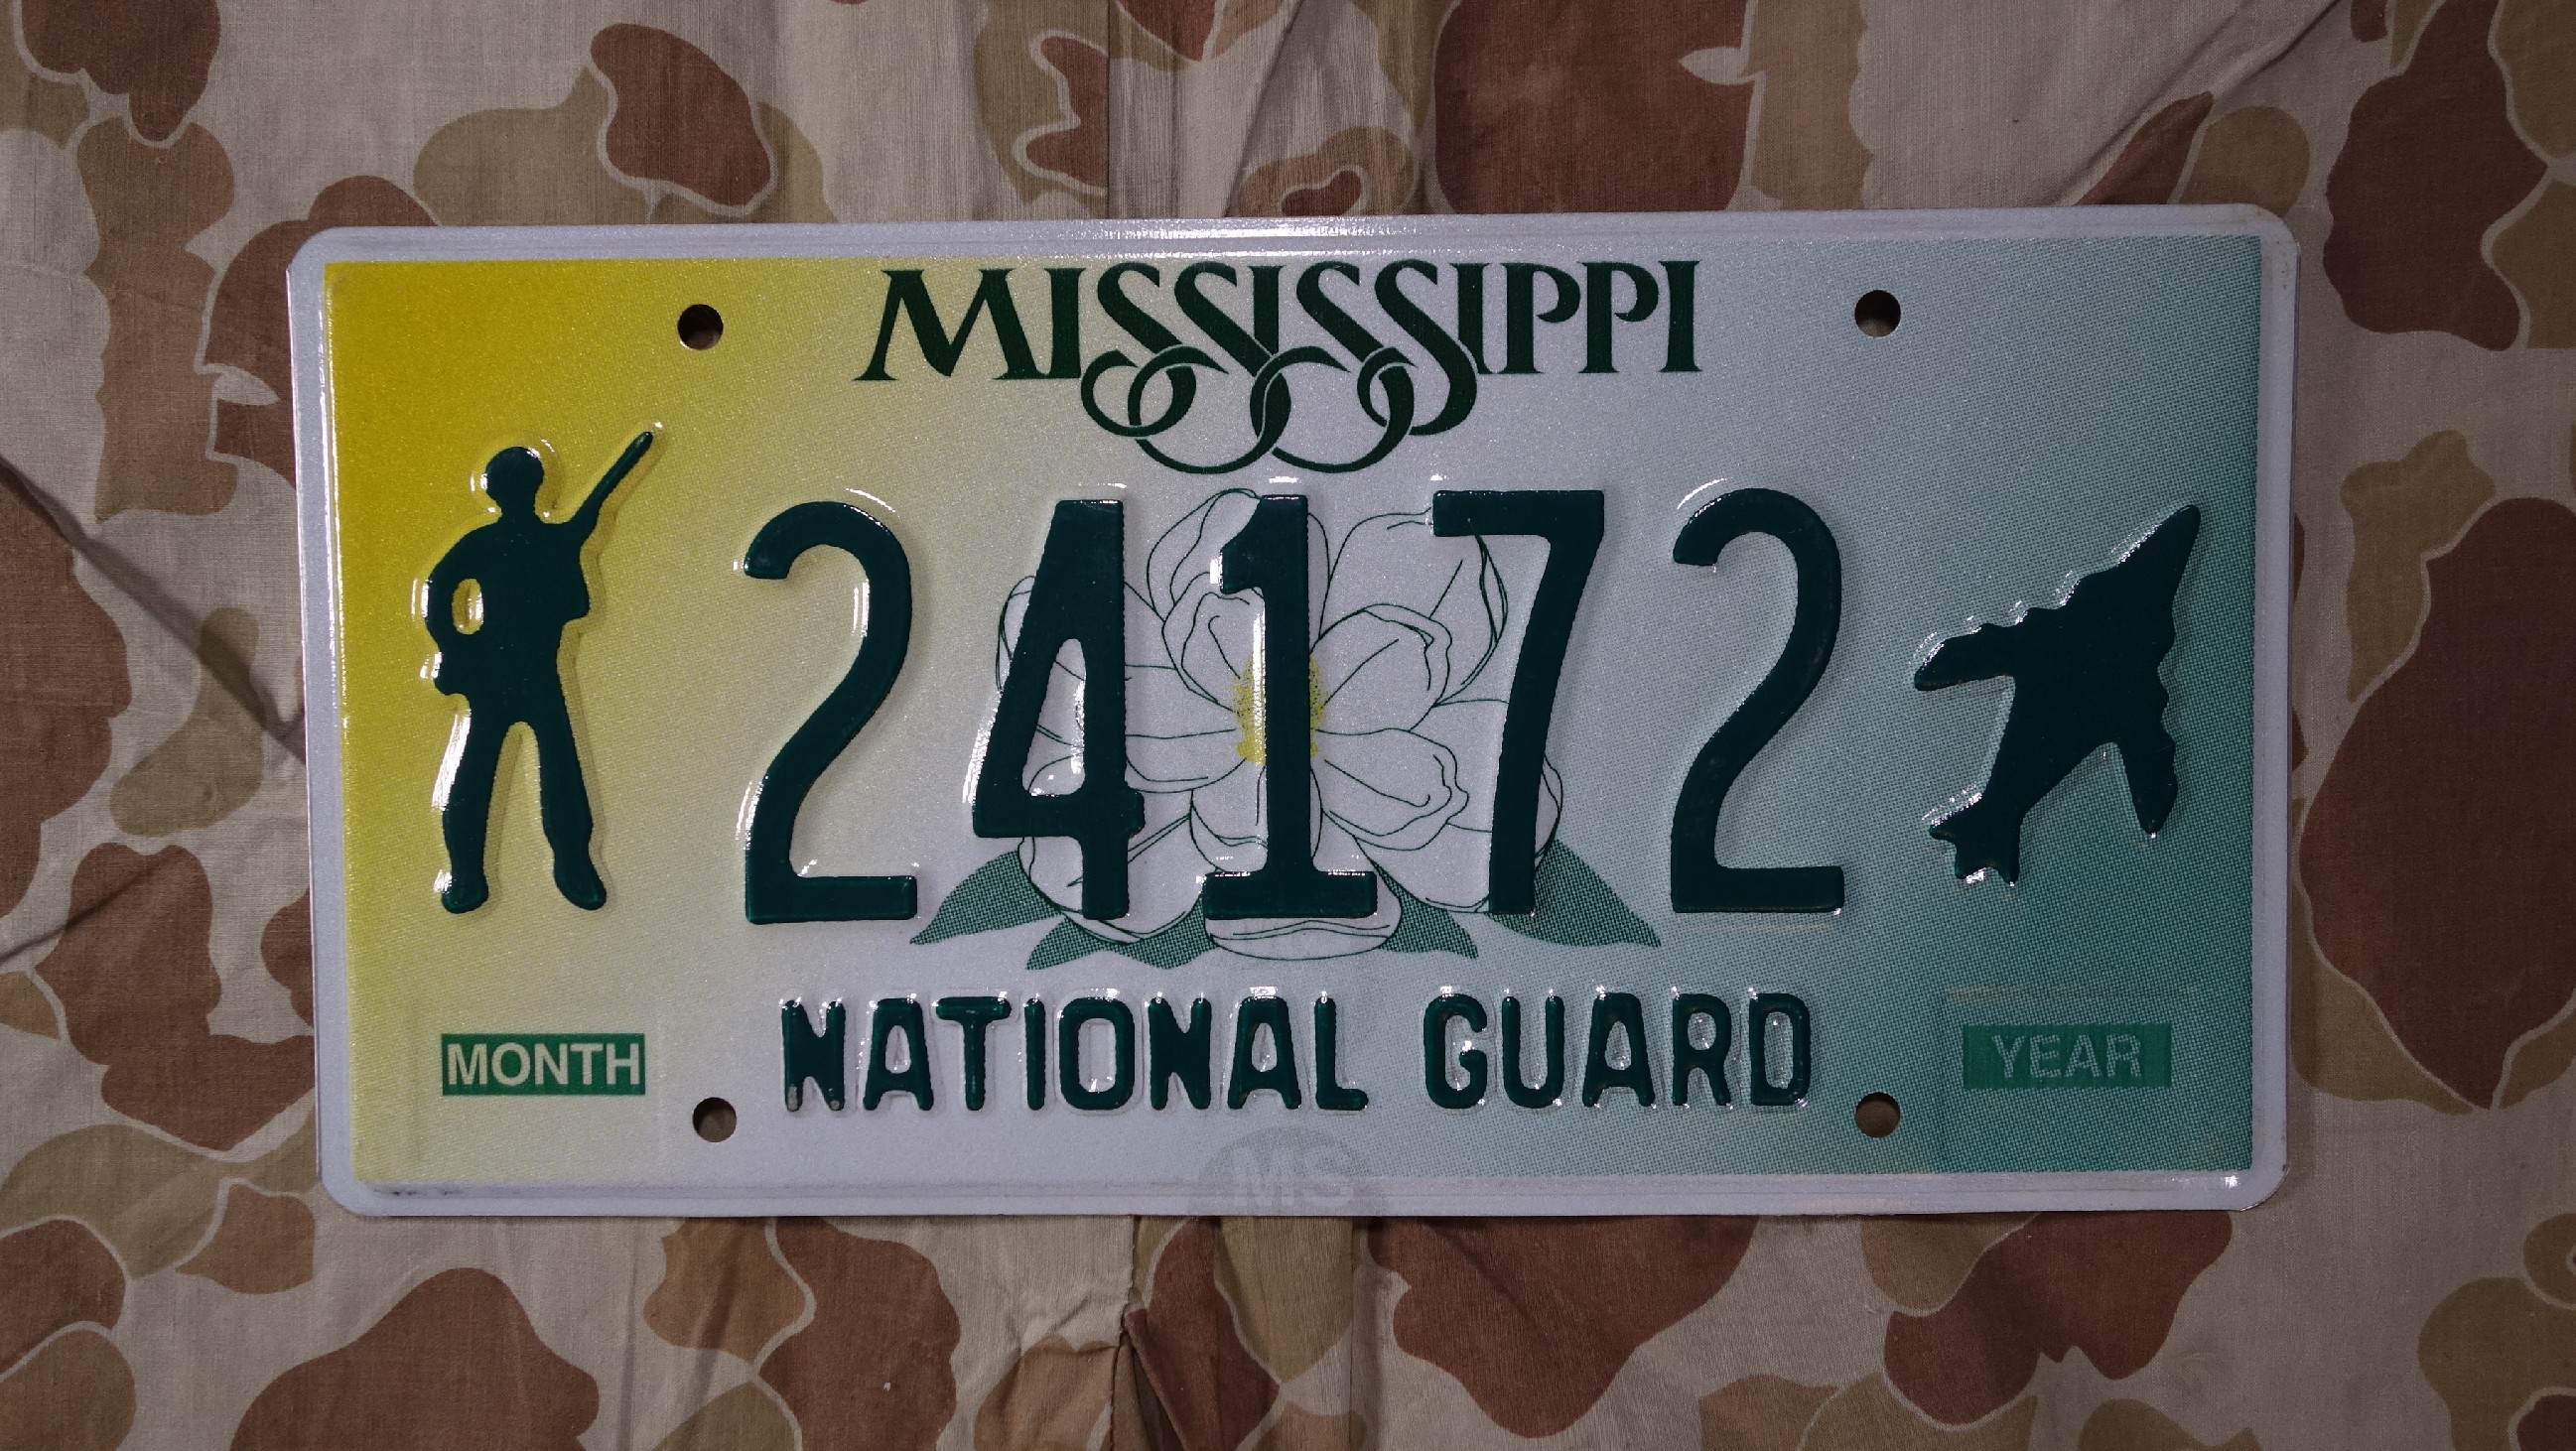 Značka na auto Mississippi National Guard